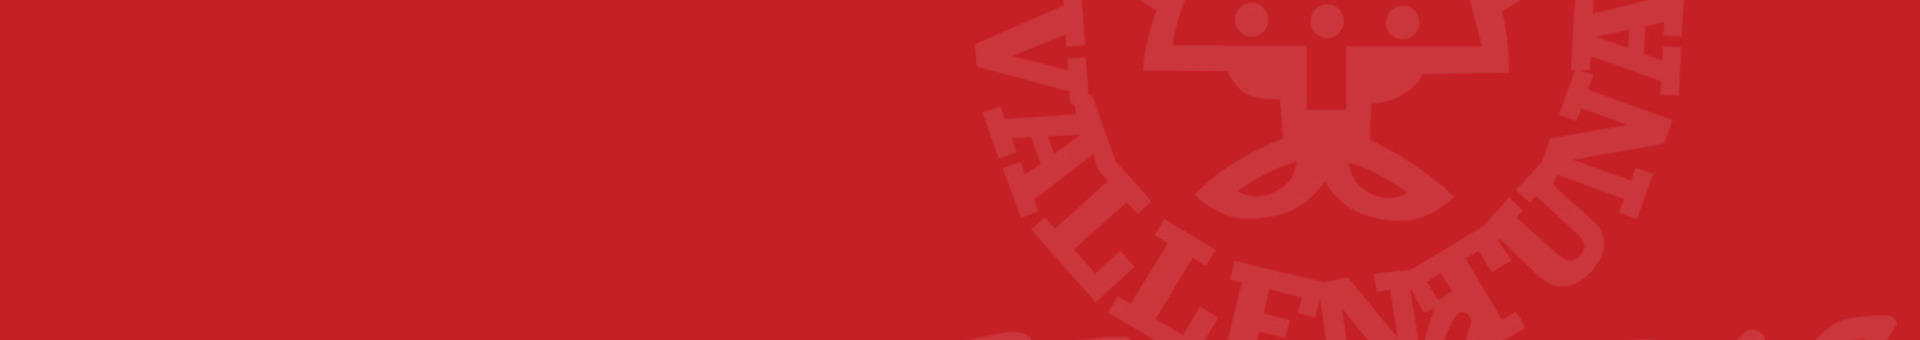 Vallentuna Hockey-logo-background.jpg (15)